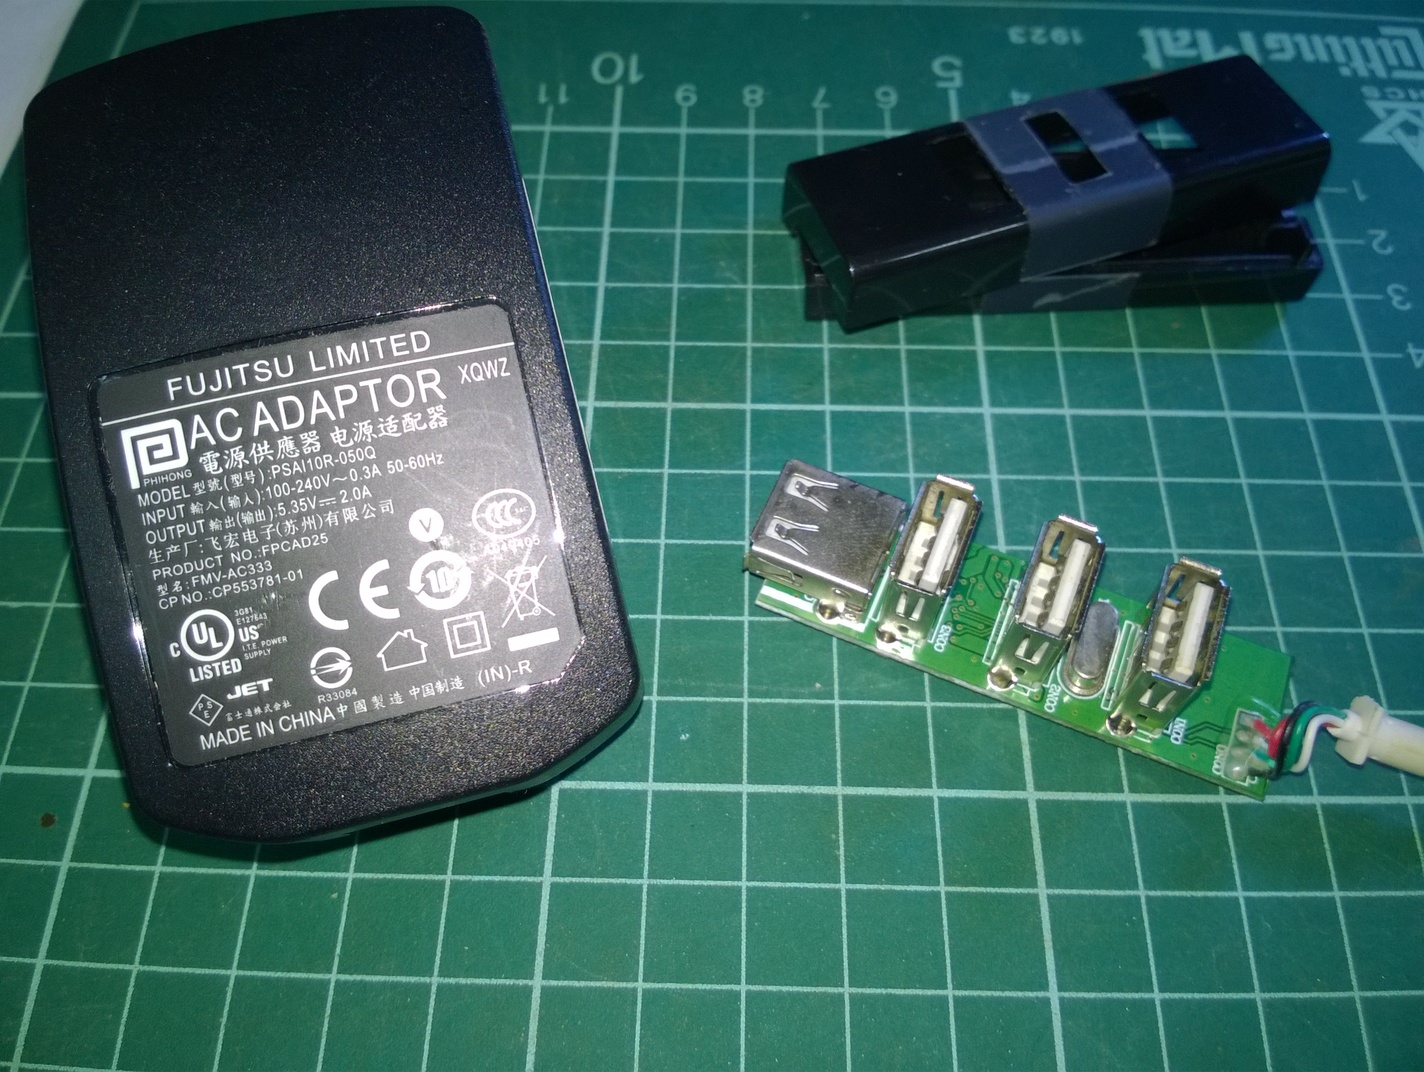 右邊的是採用 GL850G 的 USB Hub 內部圖